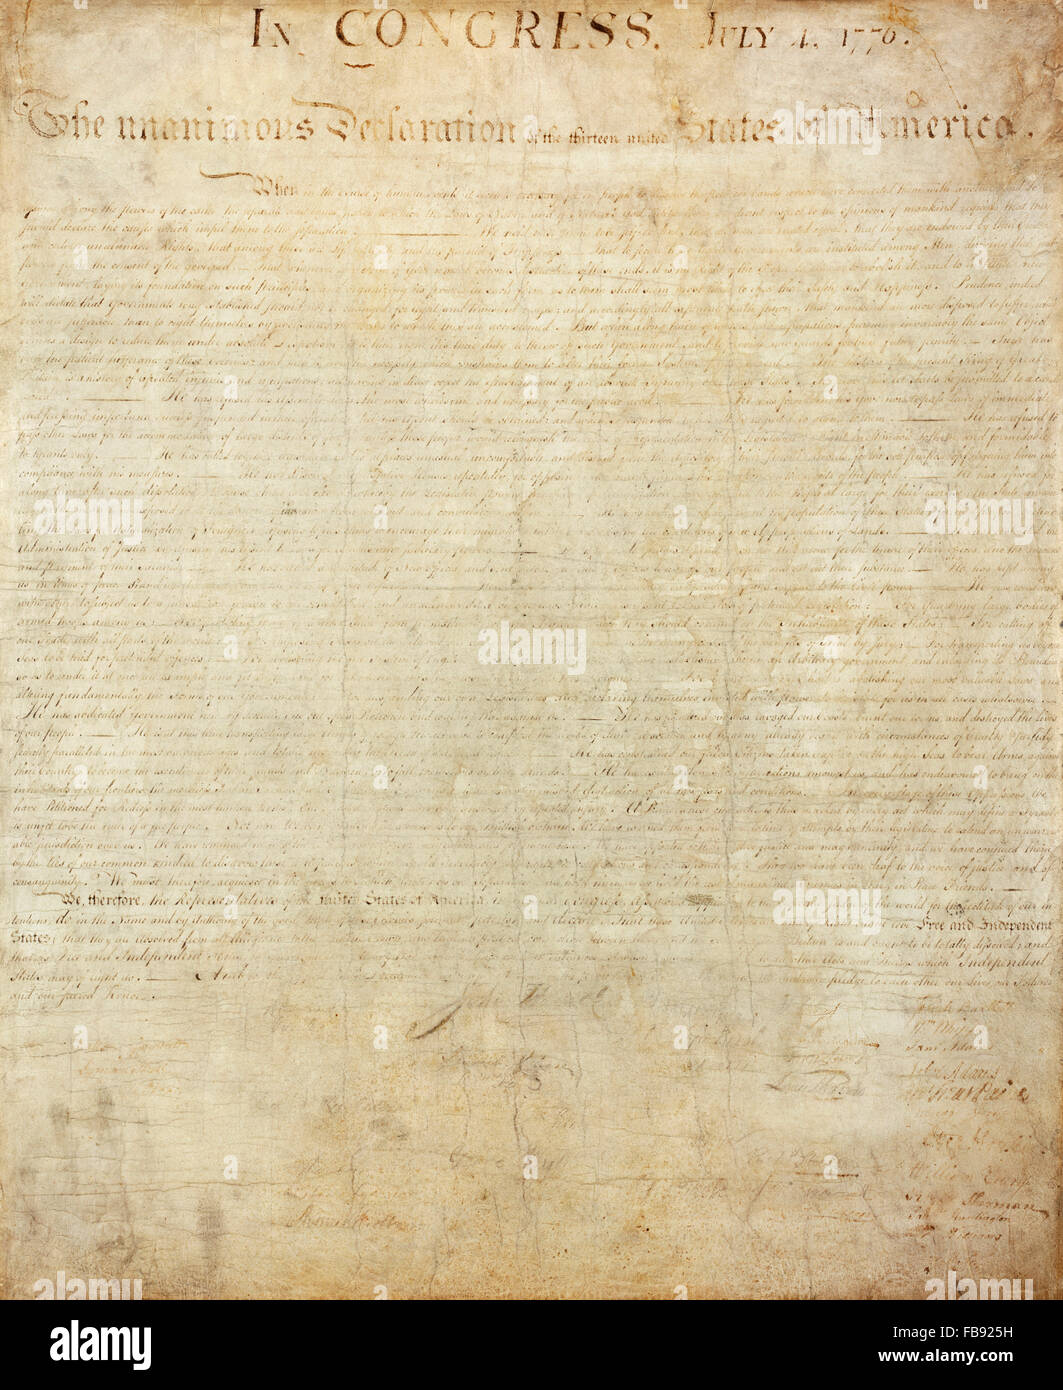 Declaración de la independencia. El mal desapareció absorto original copia de la Declaración de Independencia de EEUU, que se celebró en los Archivos Nacionales en Washington D.C. Foto de stock